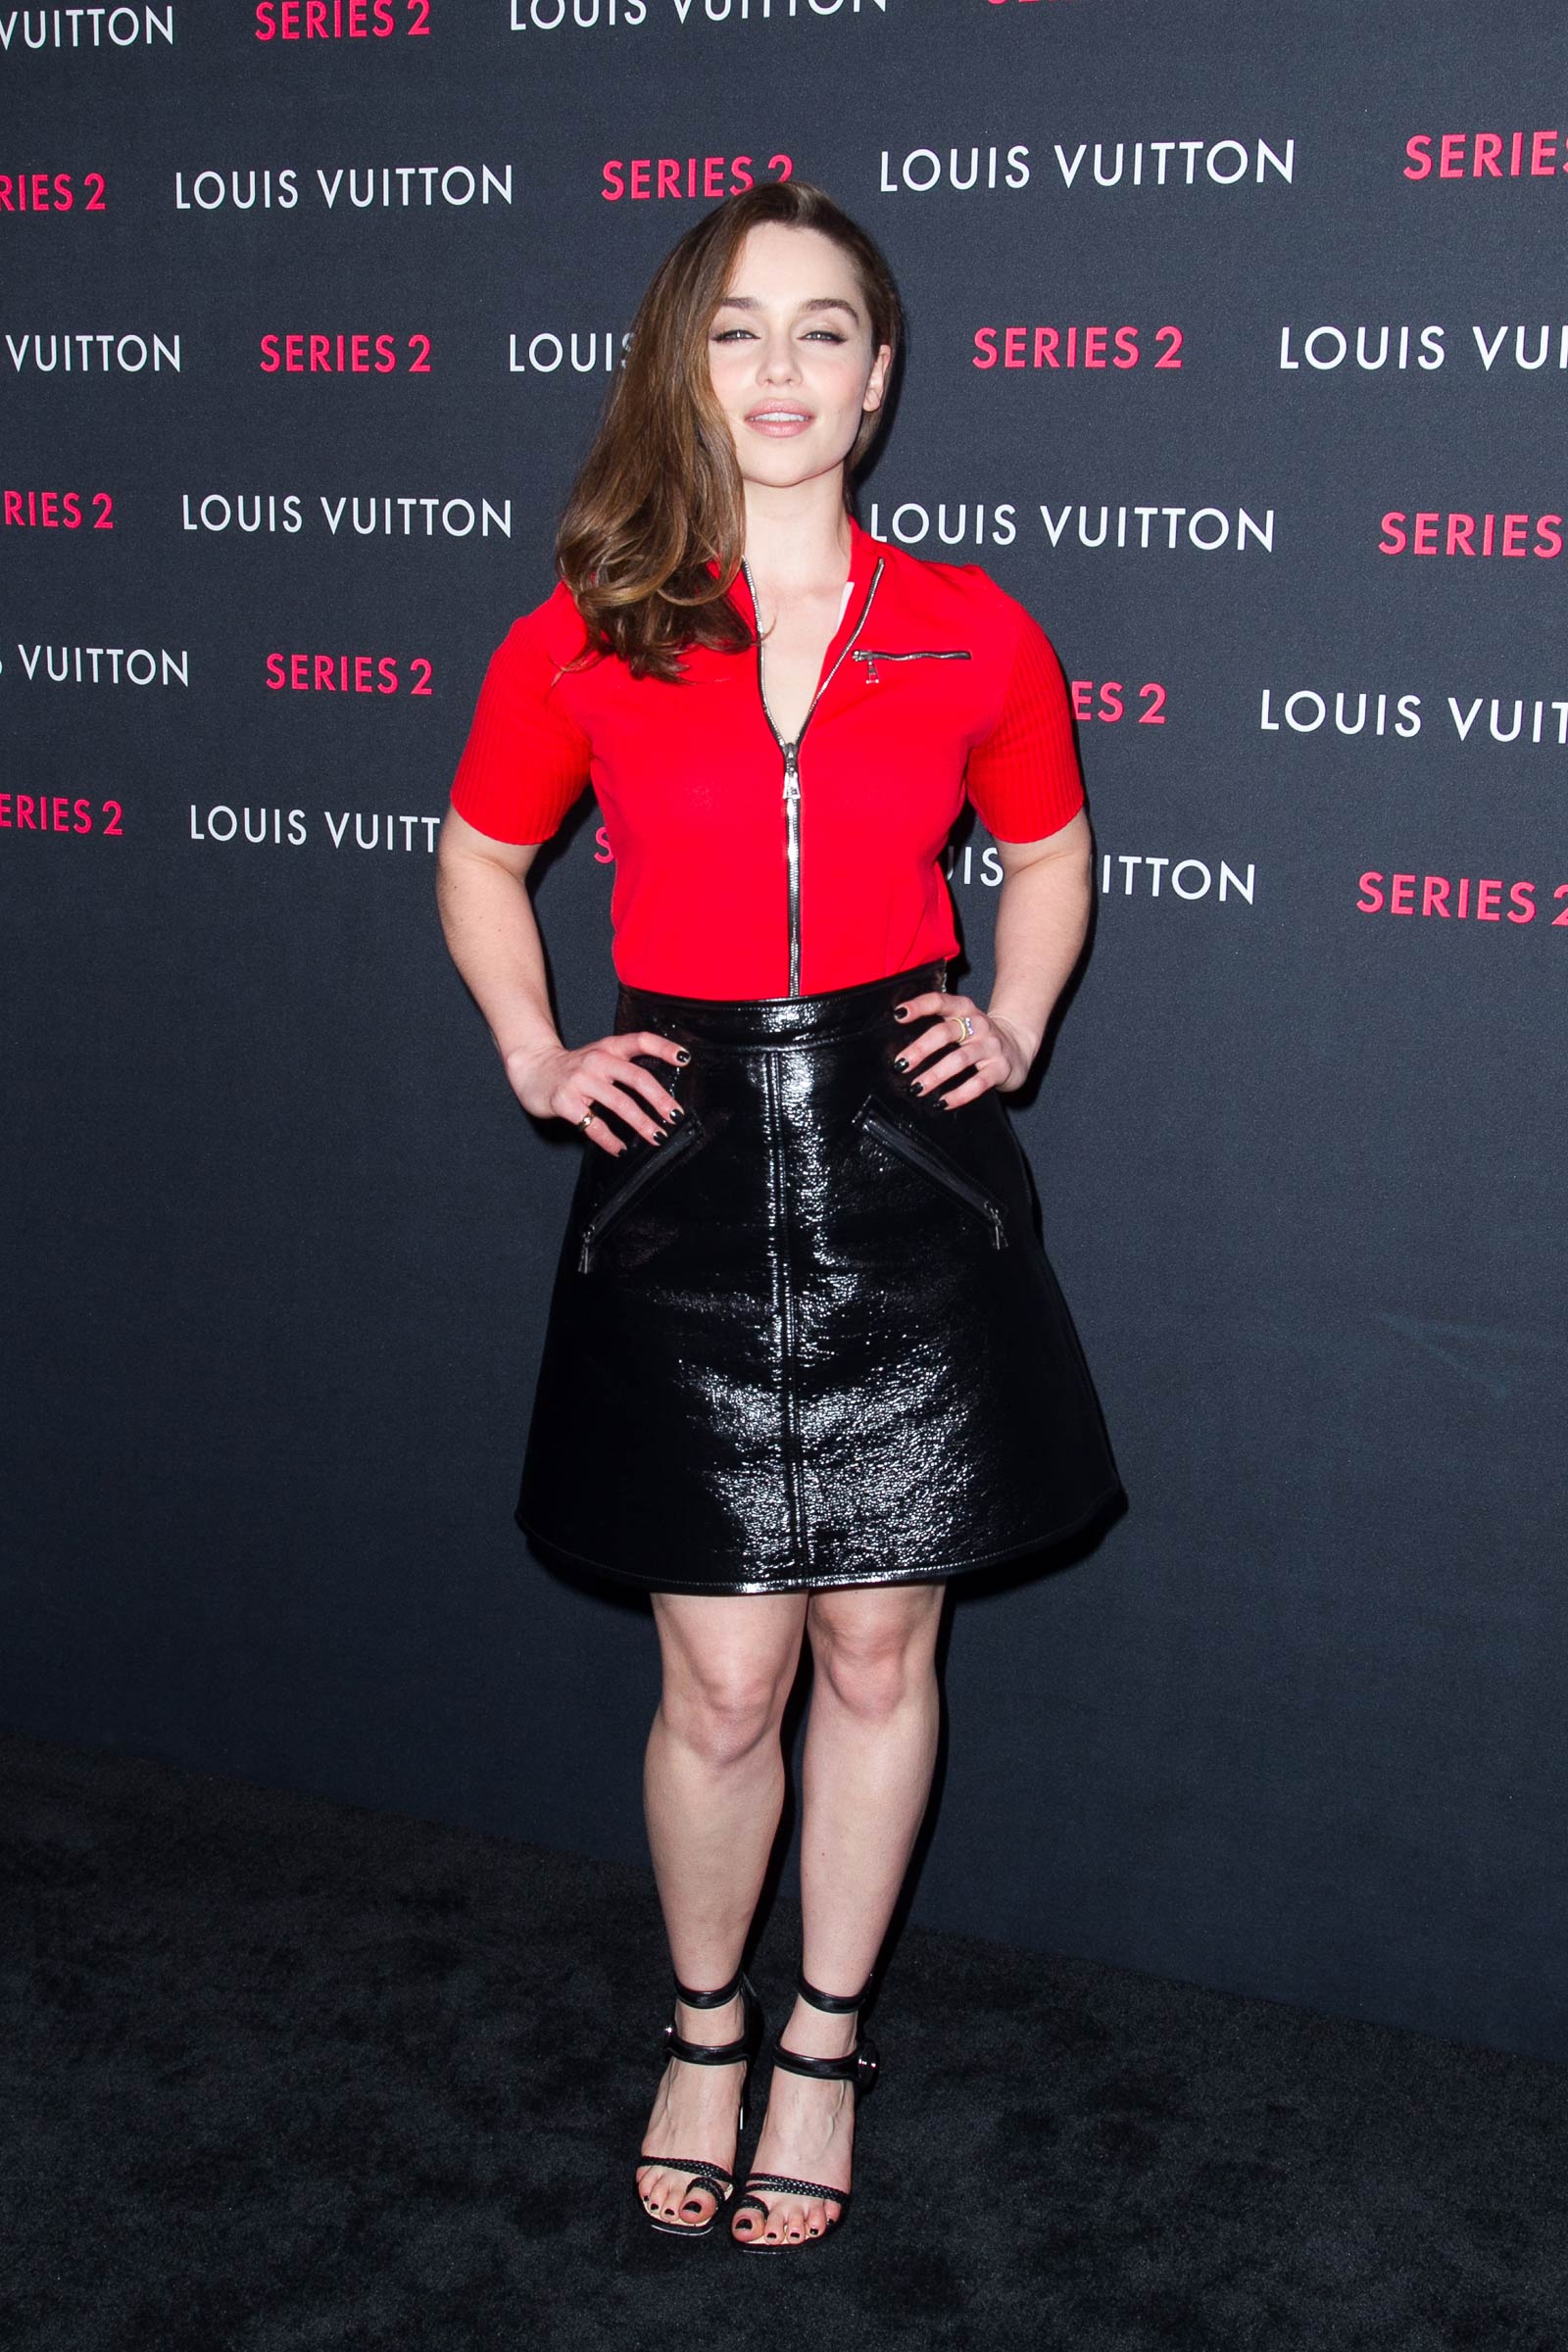 Emilia Clarke attends Louis Vuitton Series 2 The Exhibition